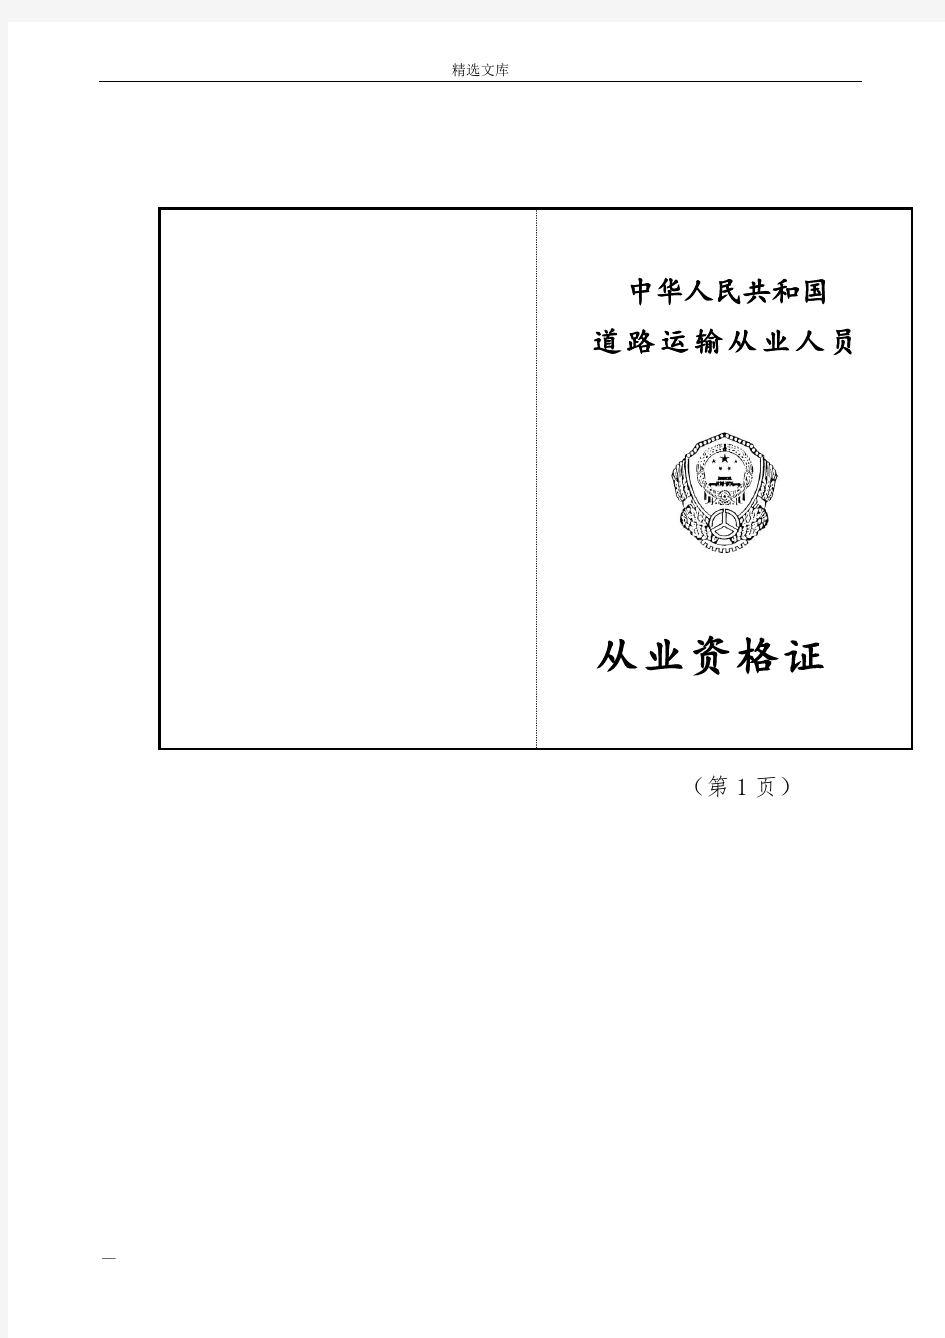 中华人民共和国道路运输从业人员从业资格证式样